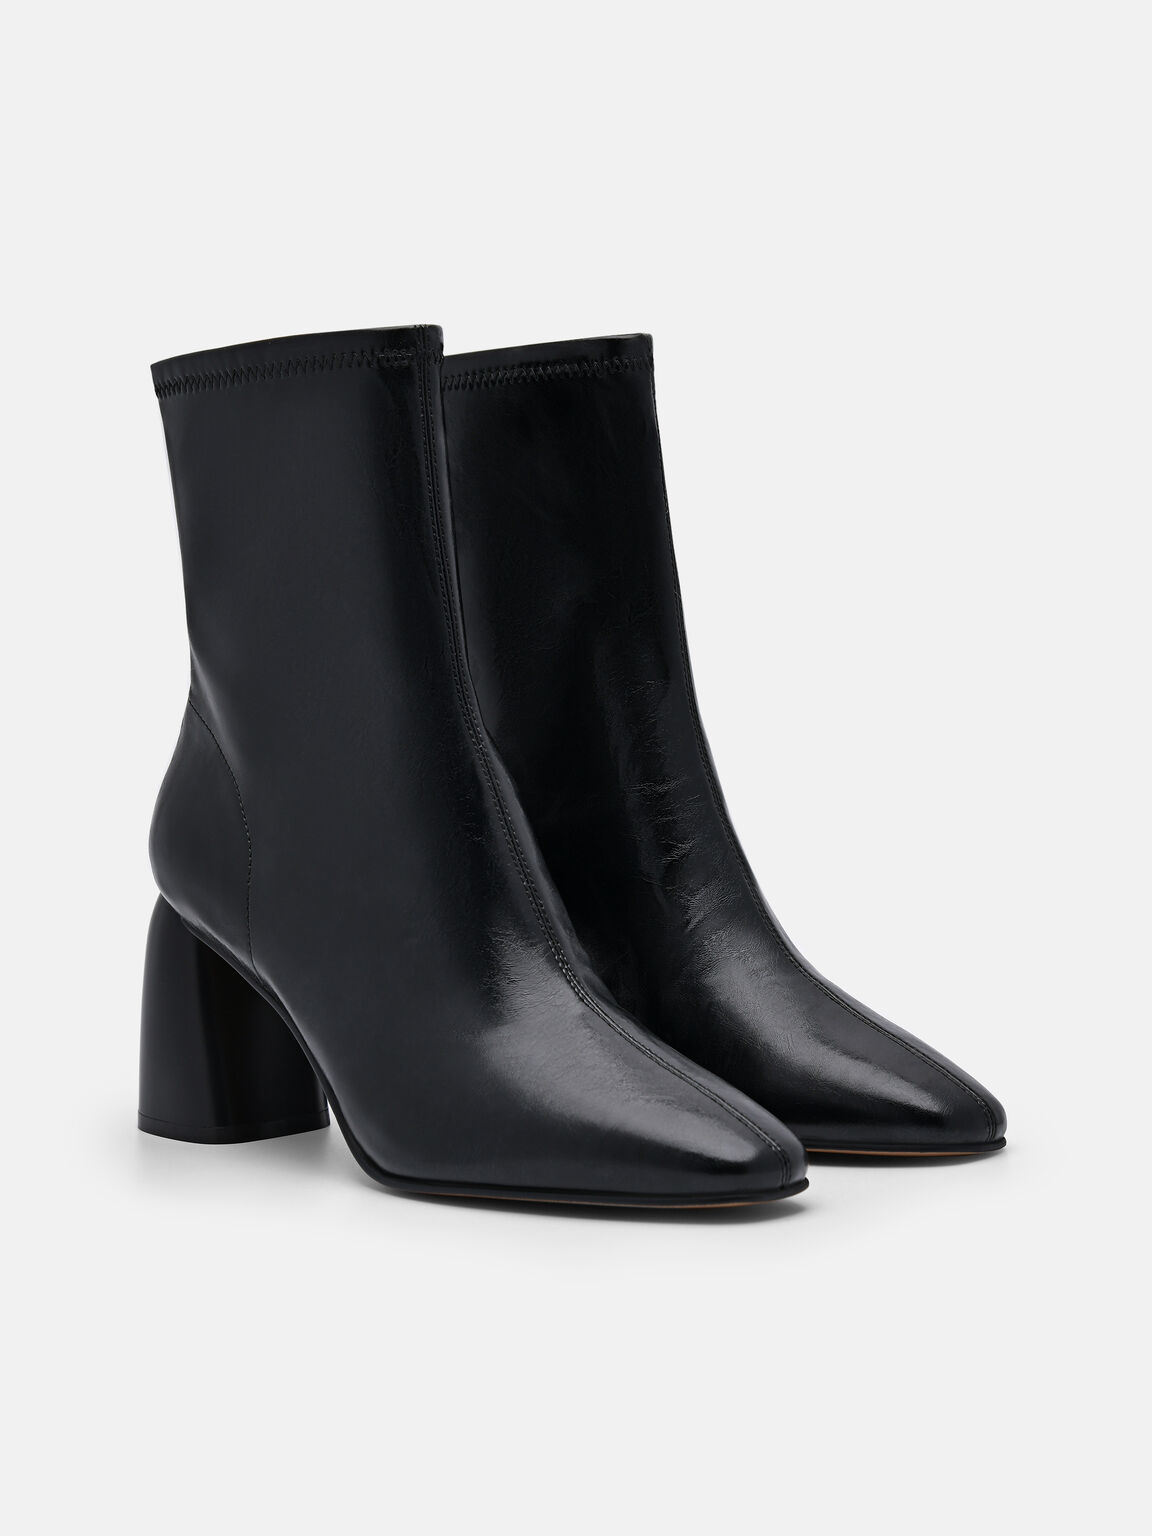 Alana Heel Boots, Black